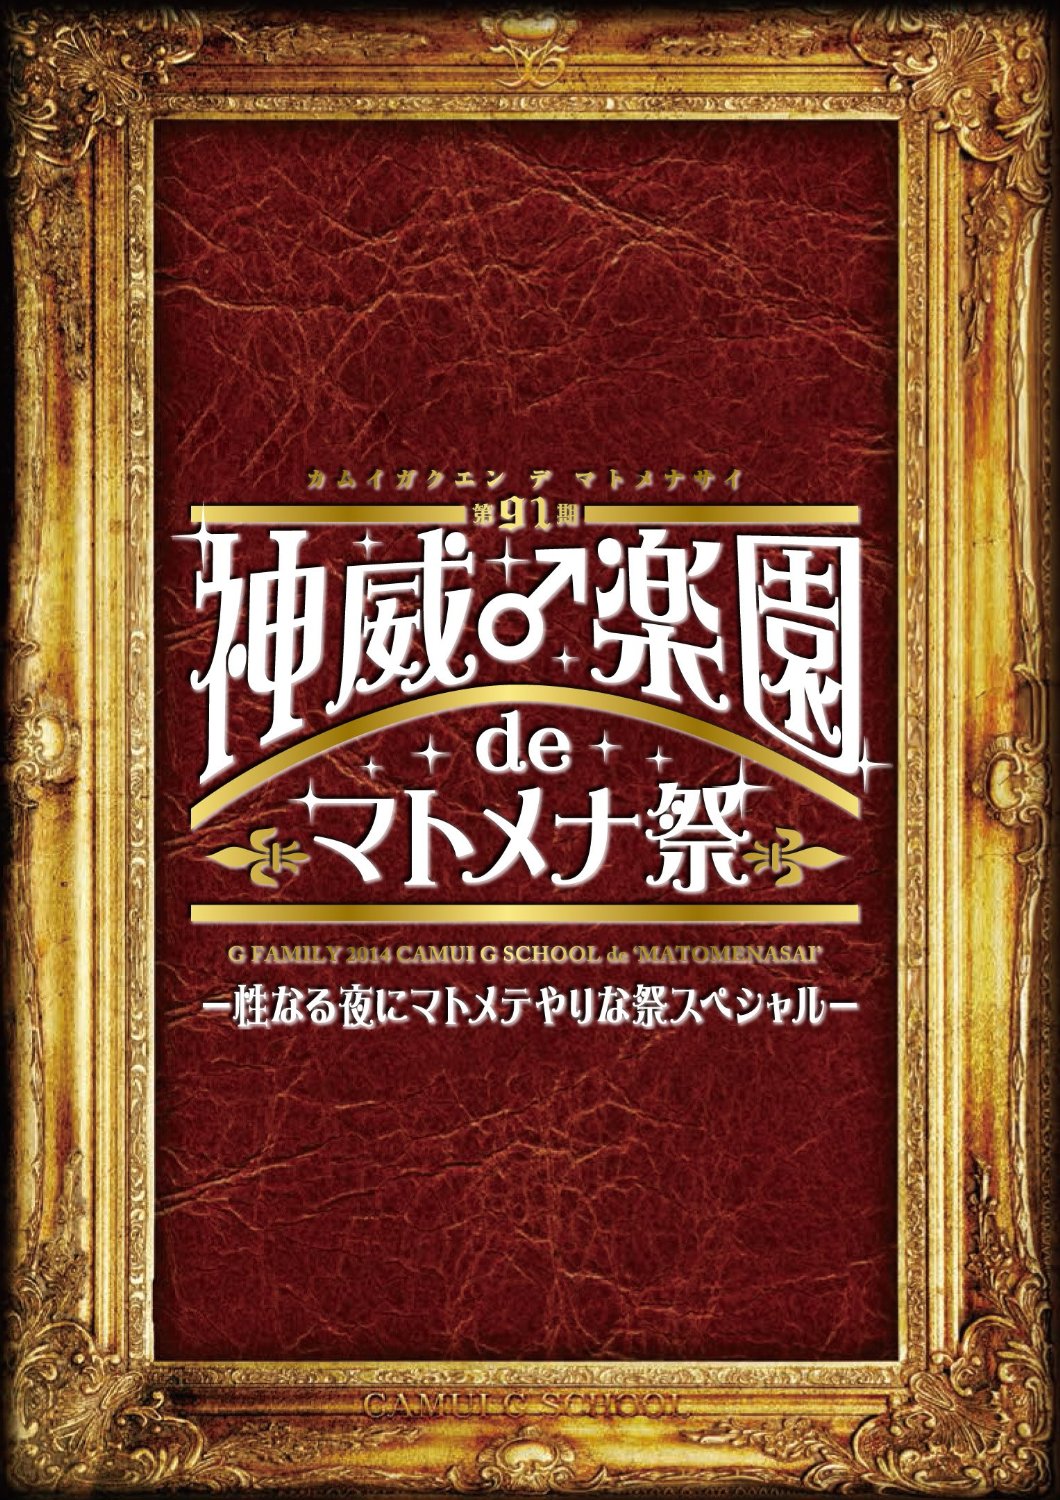 ガクト の DVD 2014 神威♂楽園 de マトメナ祭 DVD 